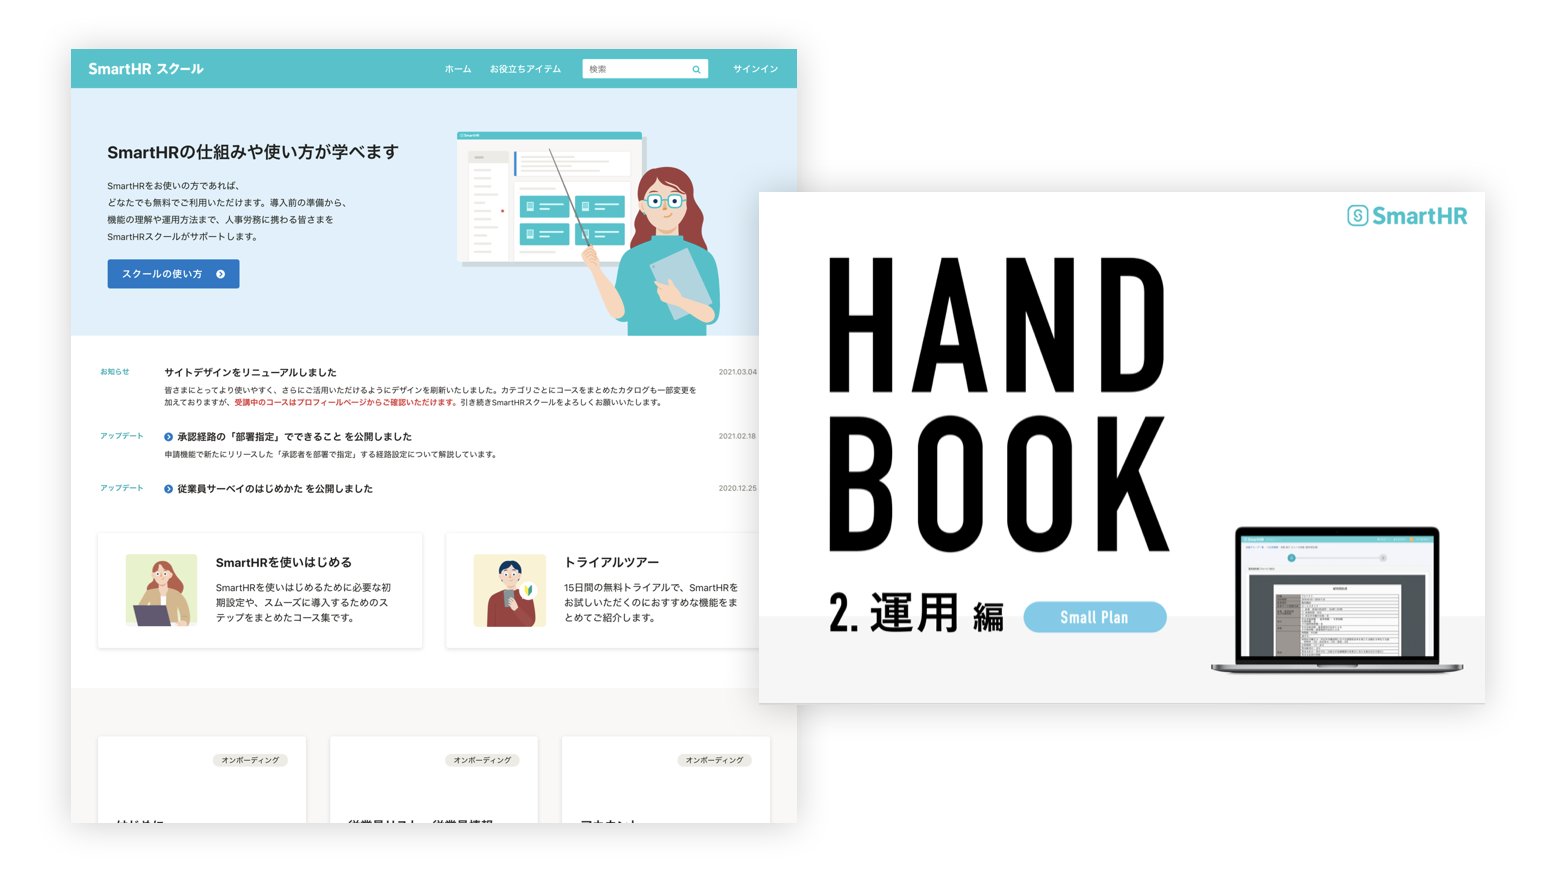 サービス導入補助ツールの画像。左手にSmartHRスクールのキャプチャが載っており、右手には大きくHAND BOOKと書かれた画像が載っている。